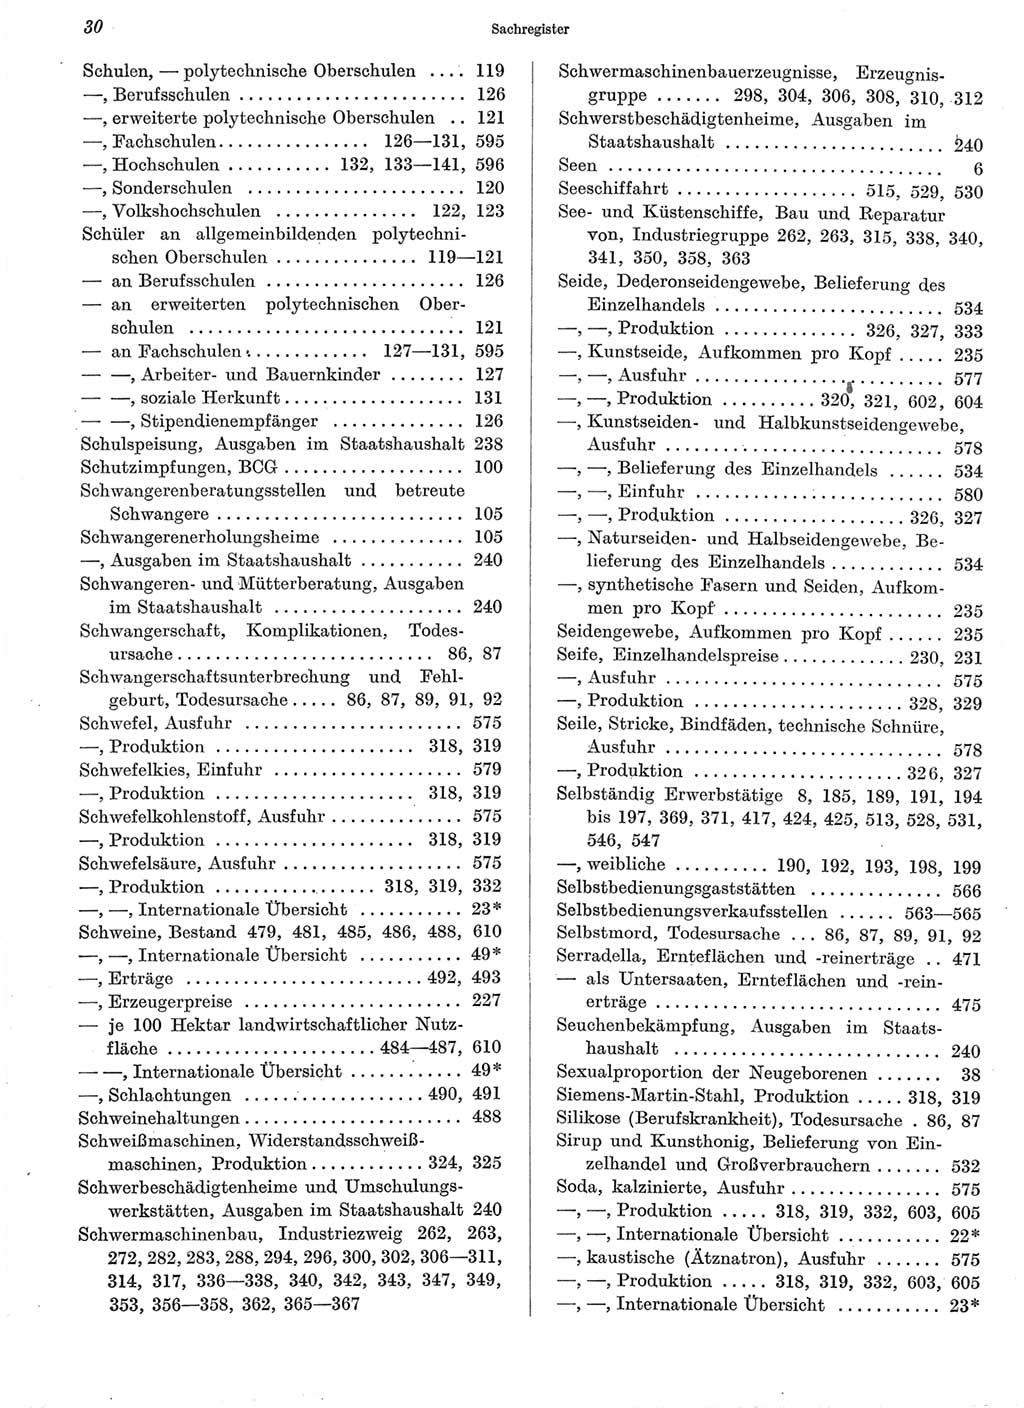 Statistisches Jahrbuch der Deutschen Demokratischen Republik (DDR) 1960-1961, Seite 30 (Stat. Jb. DDR 1960-1961, S. 30)